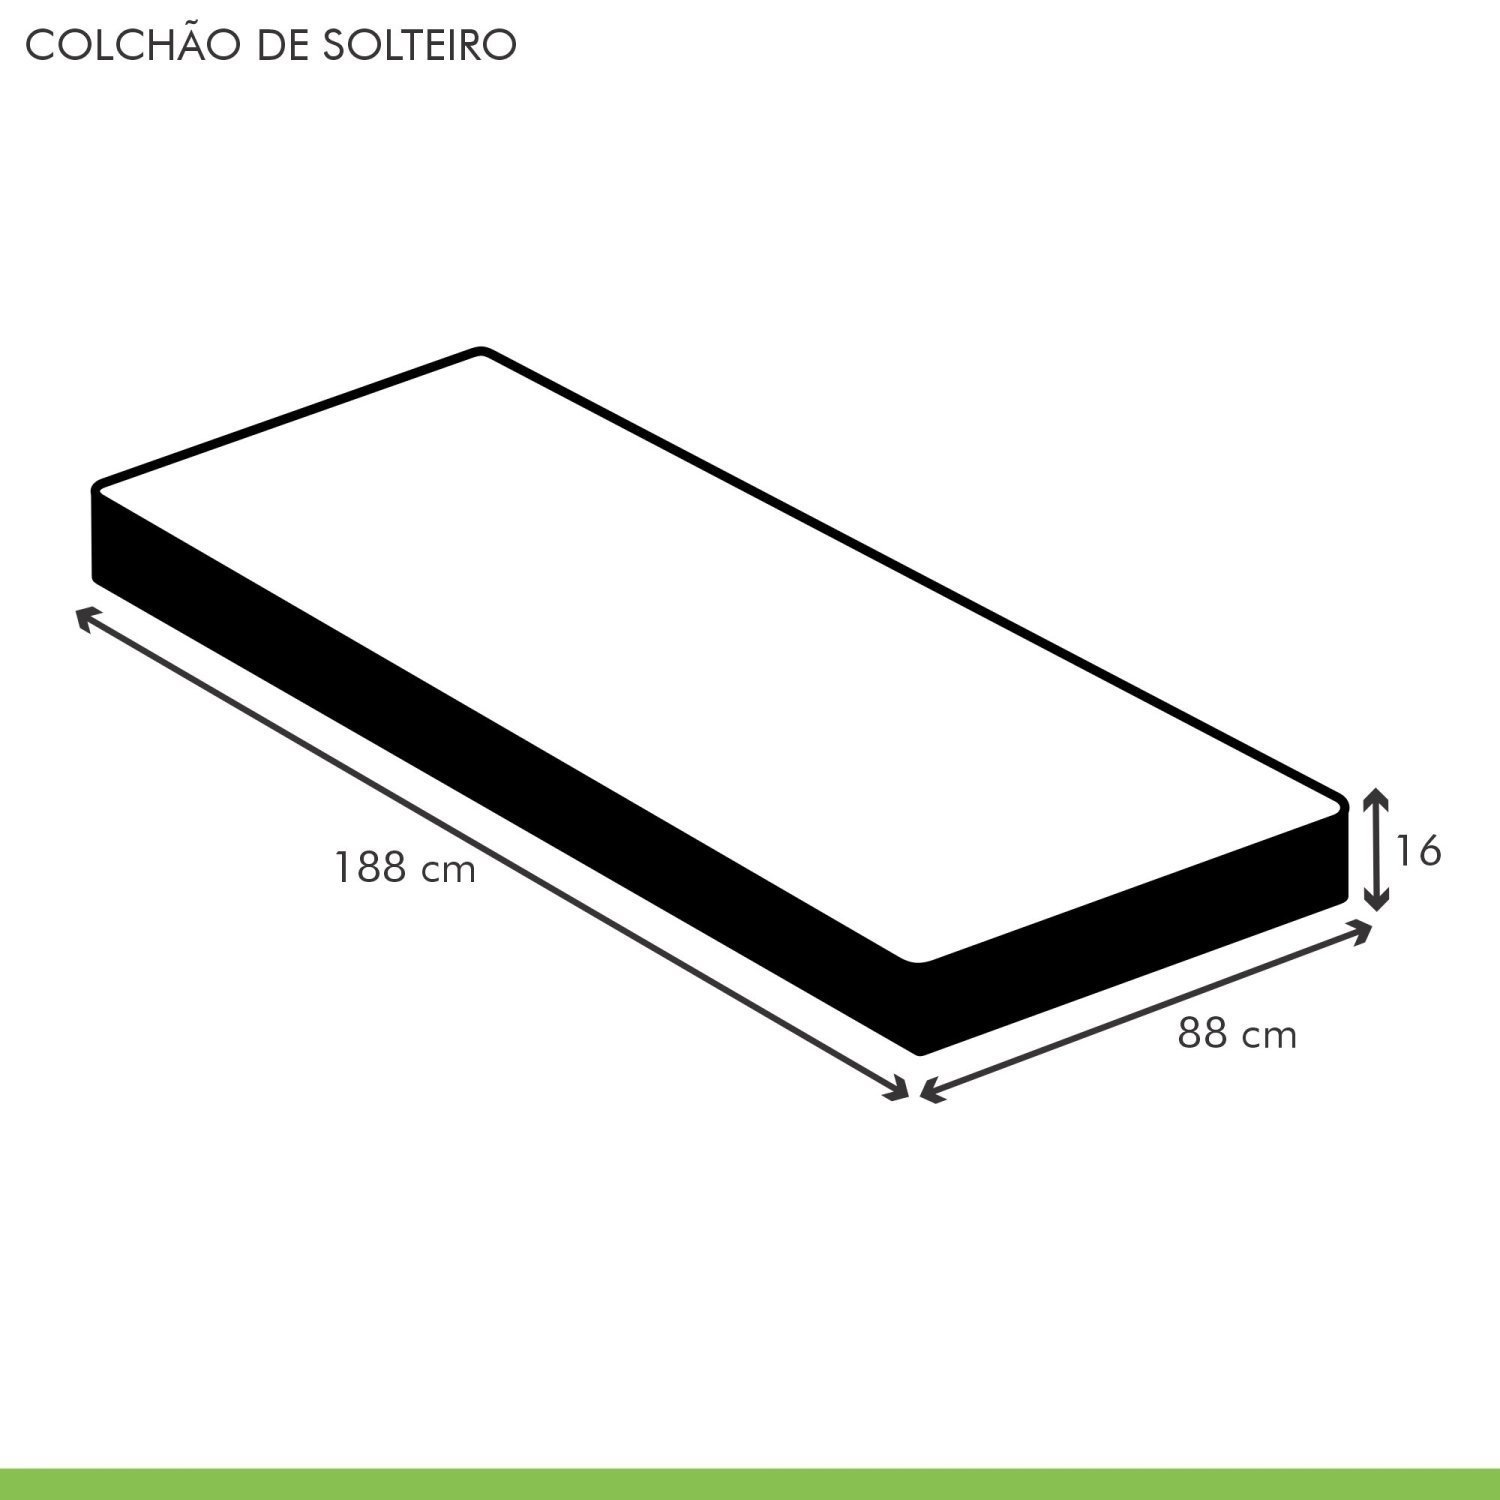 Colchão Solteiro Unique D33 Duoface 16x88x188cm  - 5